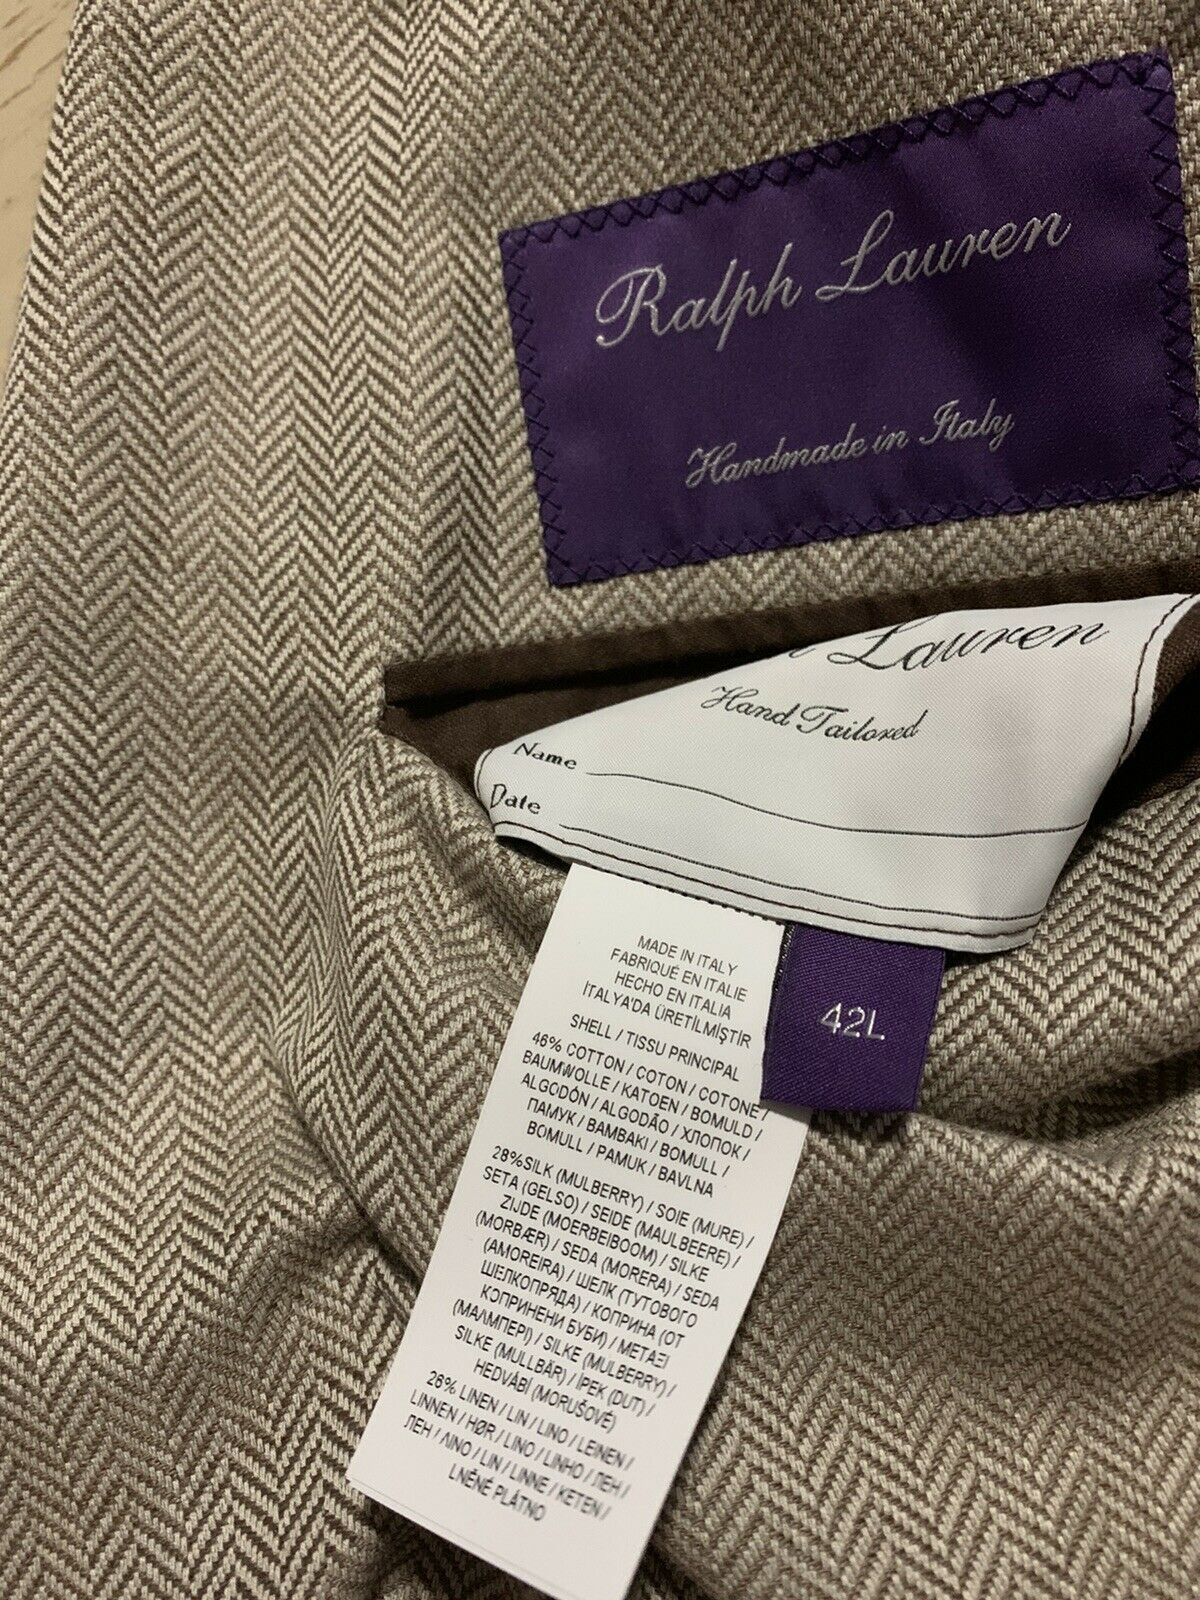 NWT $4995 Ralph Lauren Purple Label Мужской спортивный пиджак LT Коричневый 42L Ручная работа